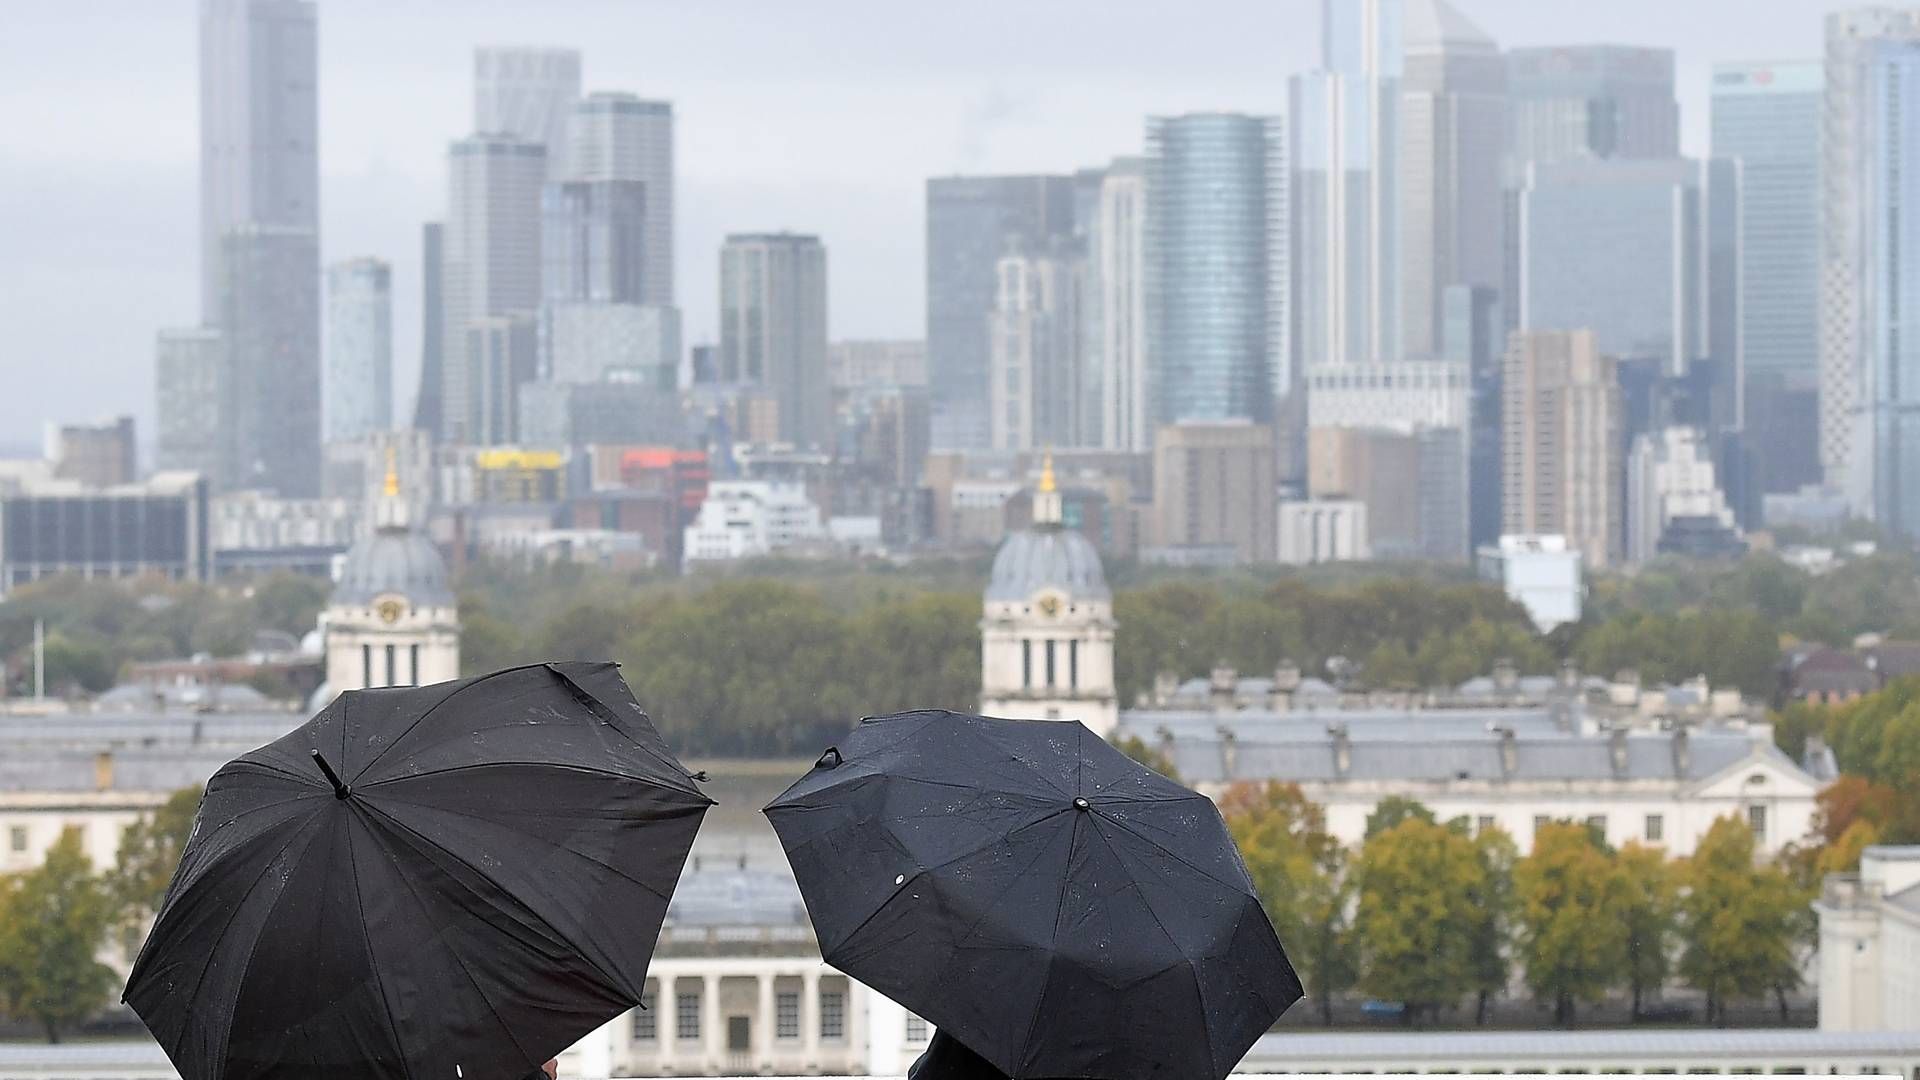 Advokatfirmaer i London skal betale mere for forsikringer. | Foto: Justin Tallis/AFP / AFP